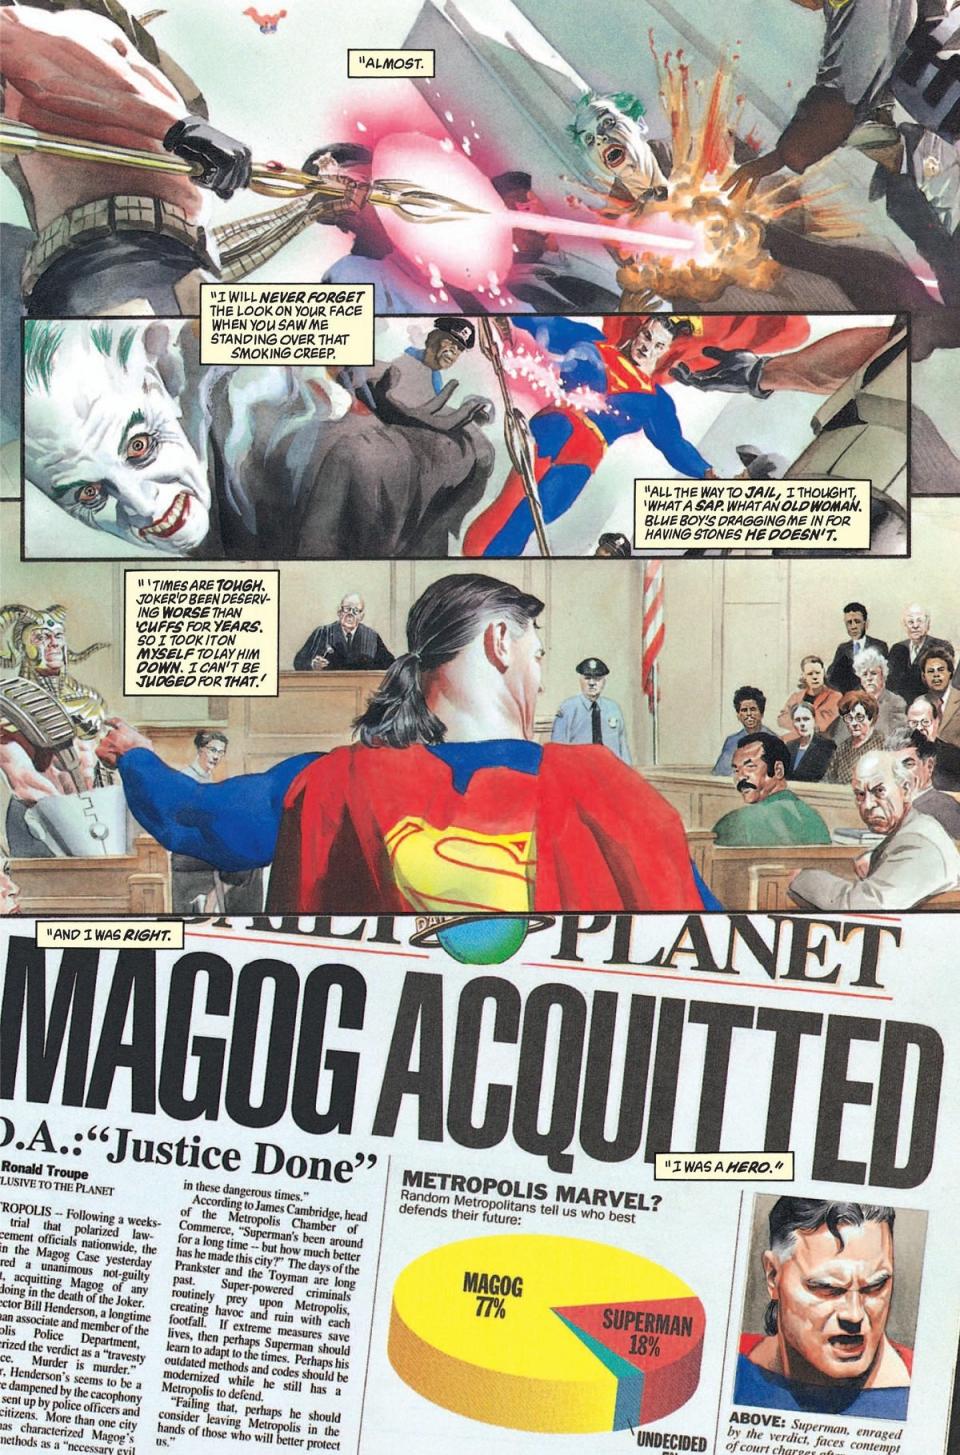 Superman vs. Magog in Kingdom Come.